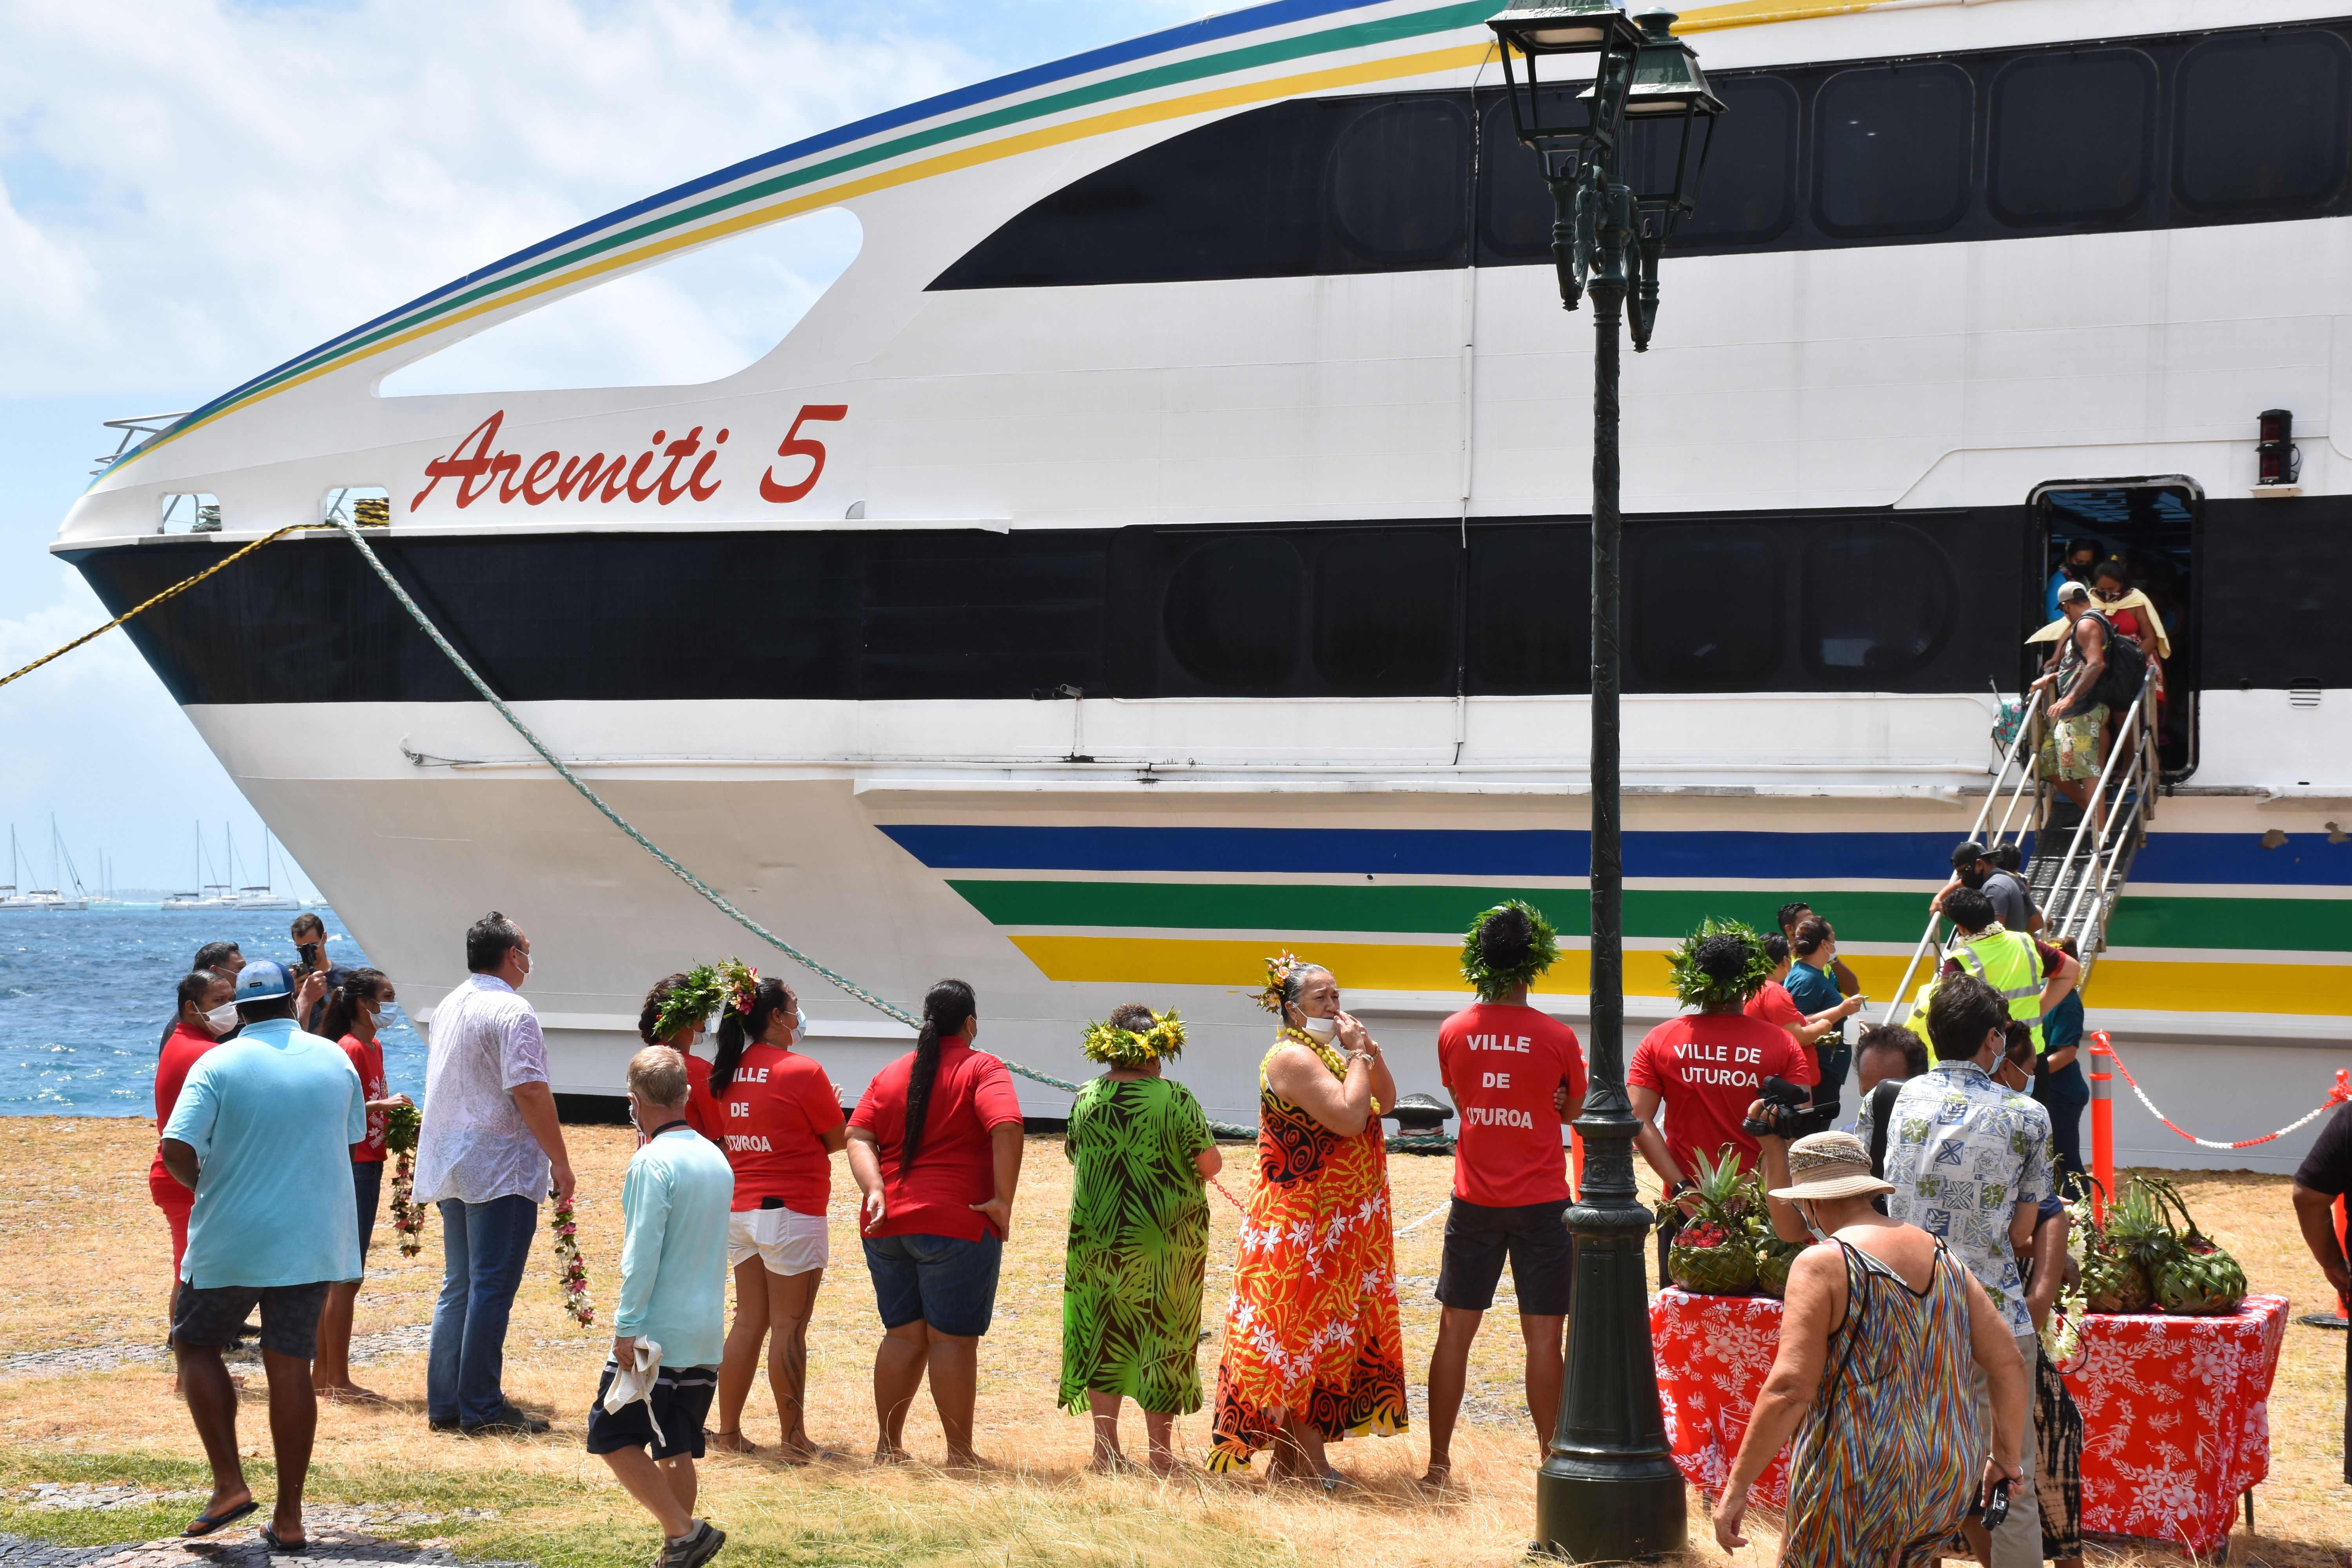 L’Aremiti 5 lance la ligne de l’Apetahi express sur la route des Raromatai